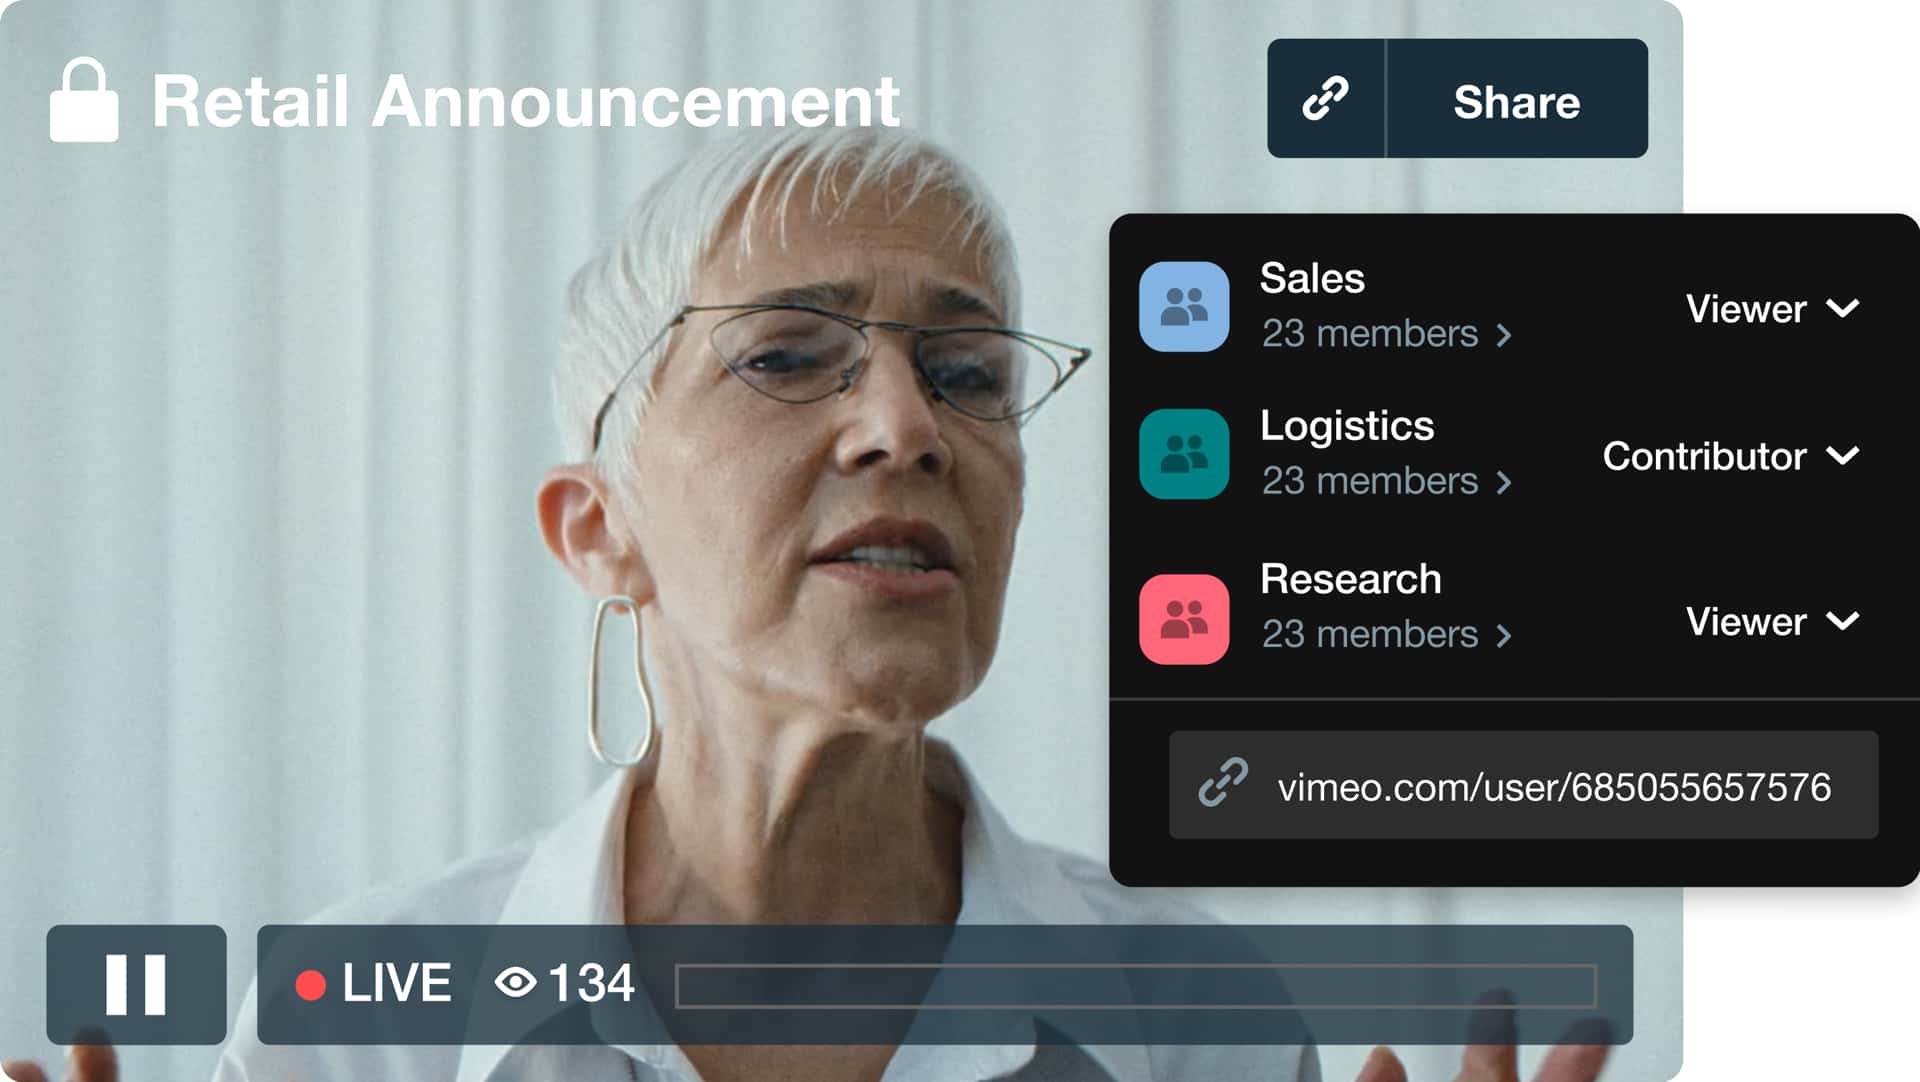 Eine Frau mit Brille spricht in einem Live-Video mit dem Titel „Retail Announcement“ (Retail-Ankündigung), daneben wird ein Protokoll von Zuschauern aus verschiedenen Unternehmensteams angezeigt.